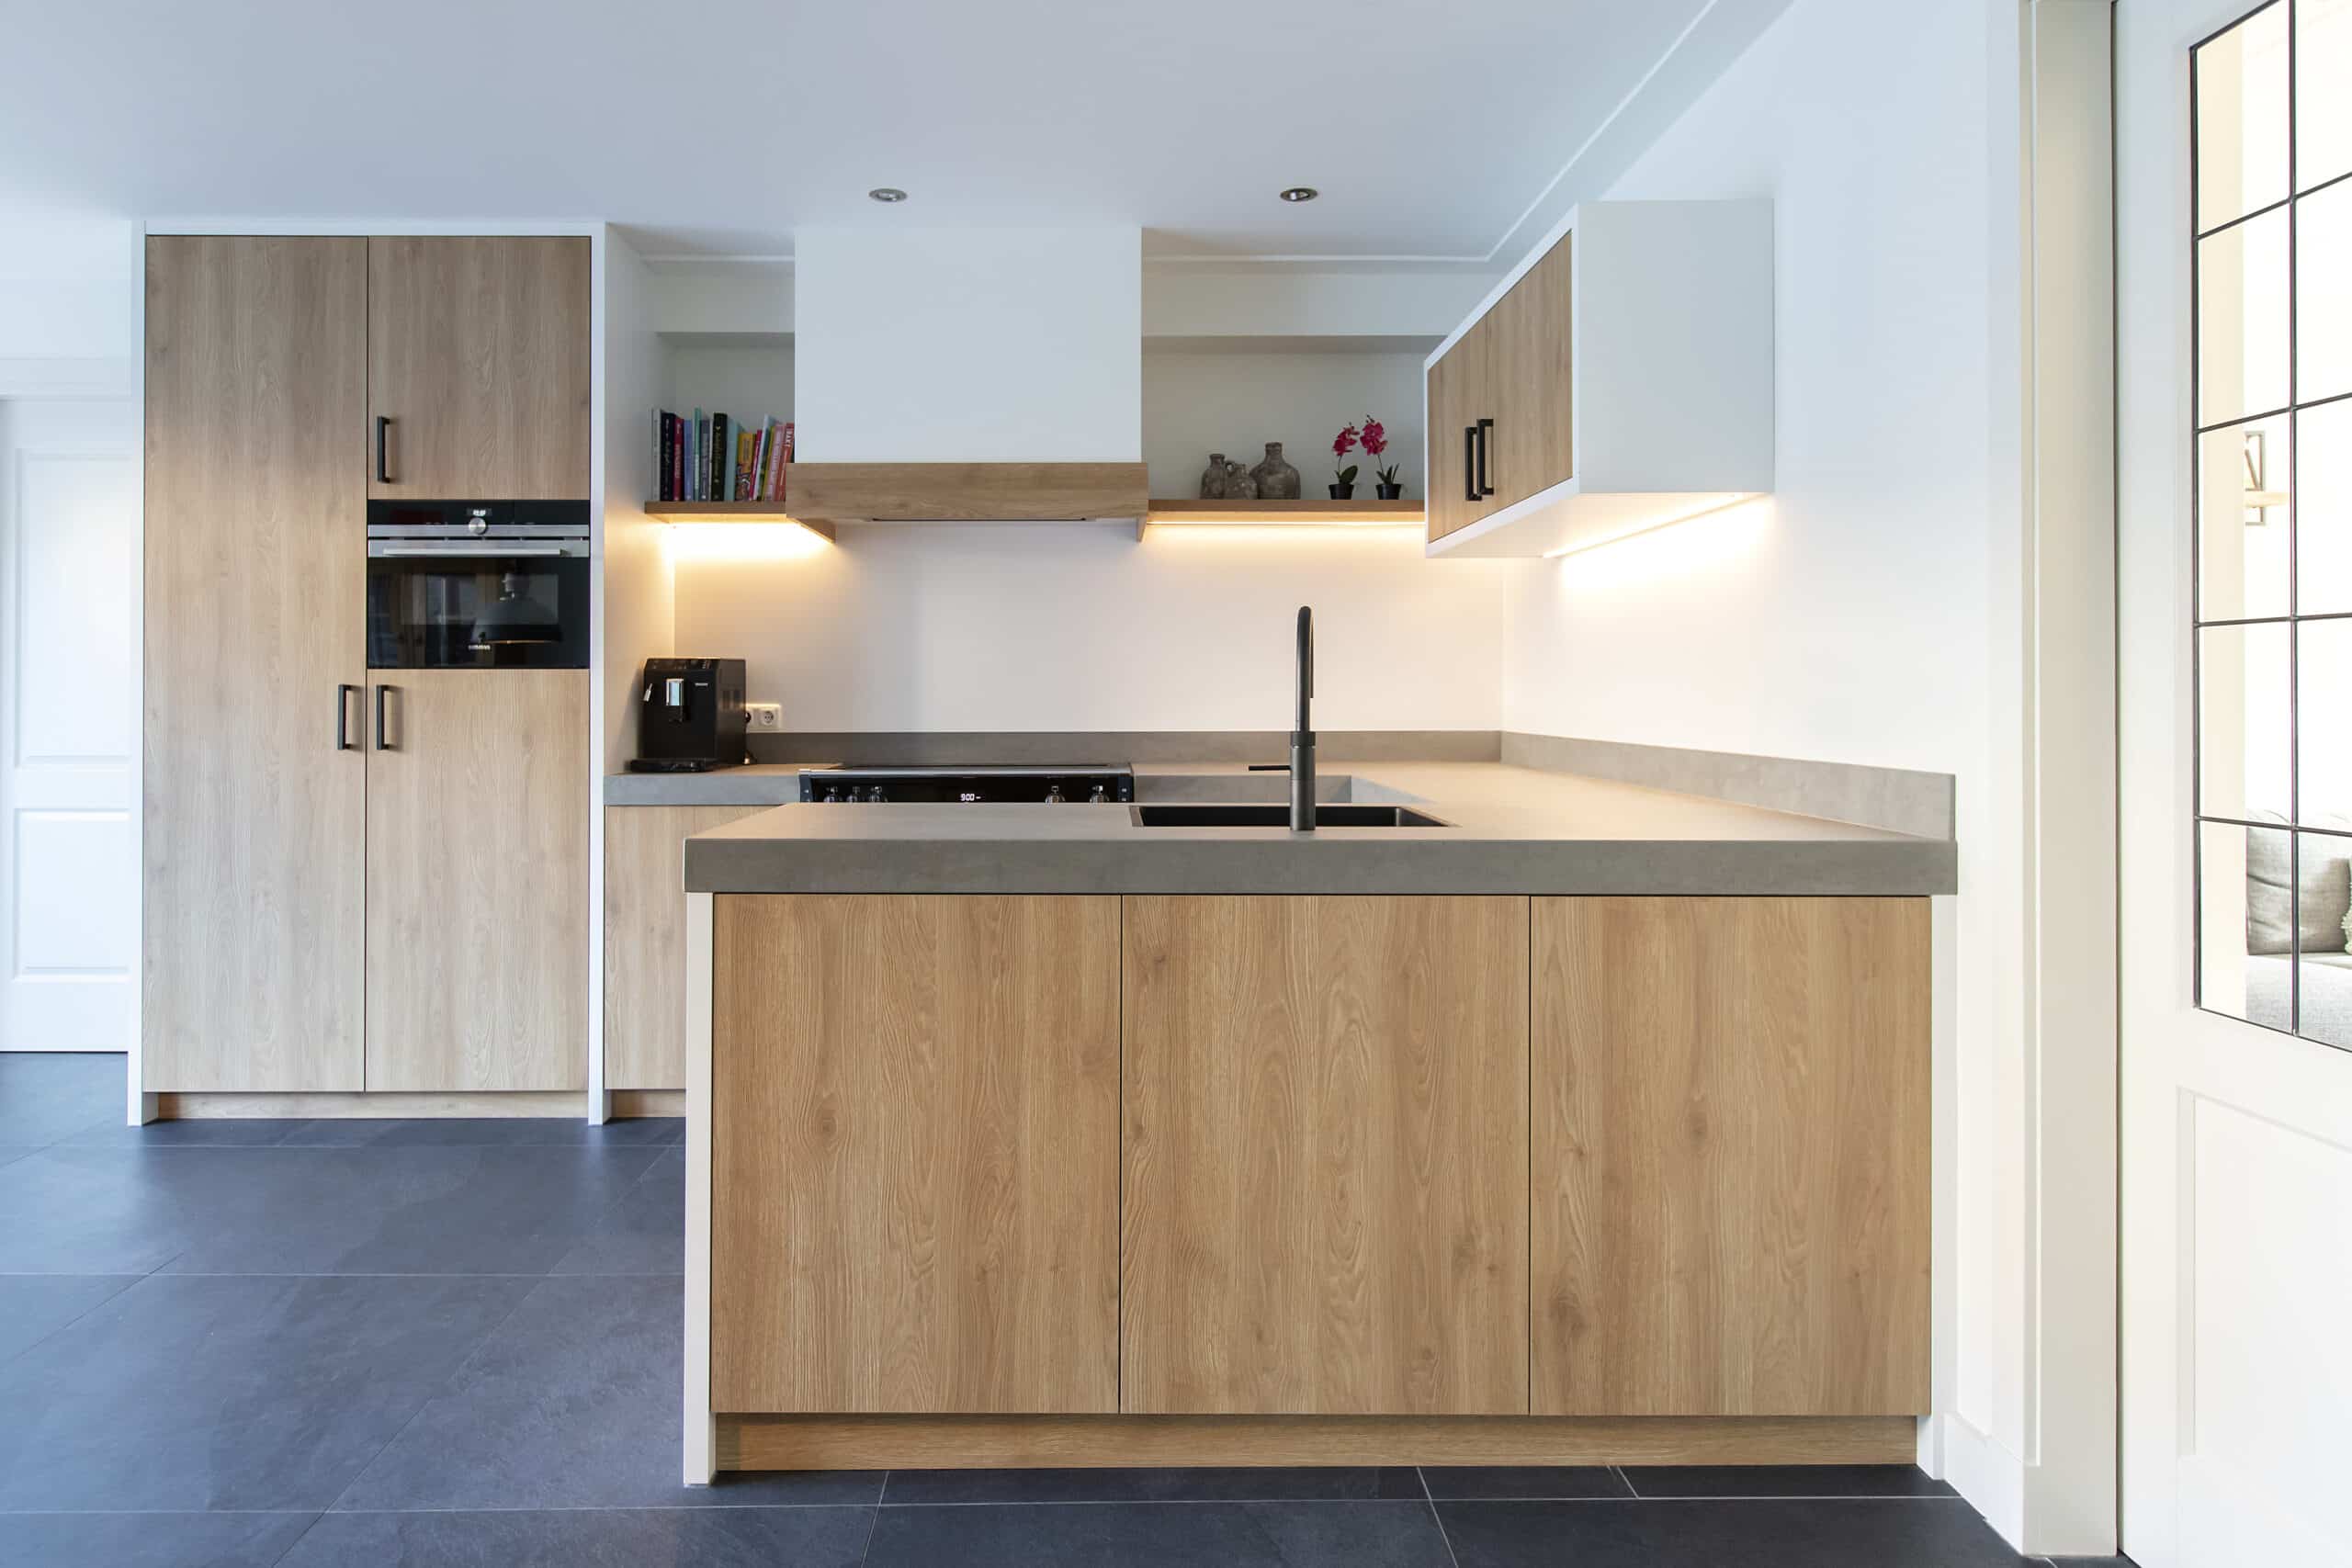 Keuken in decoratief plaatmateriaal met eikenhout structuur